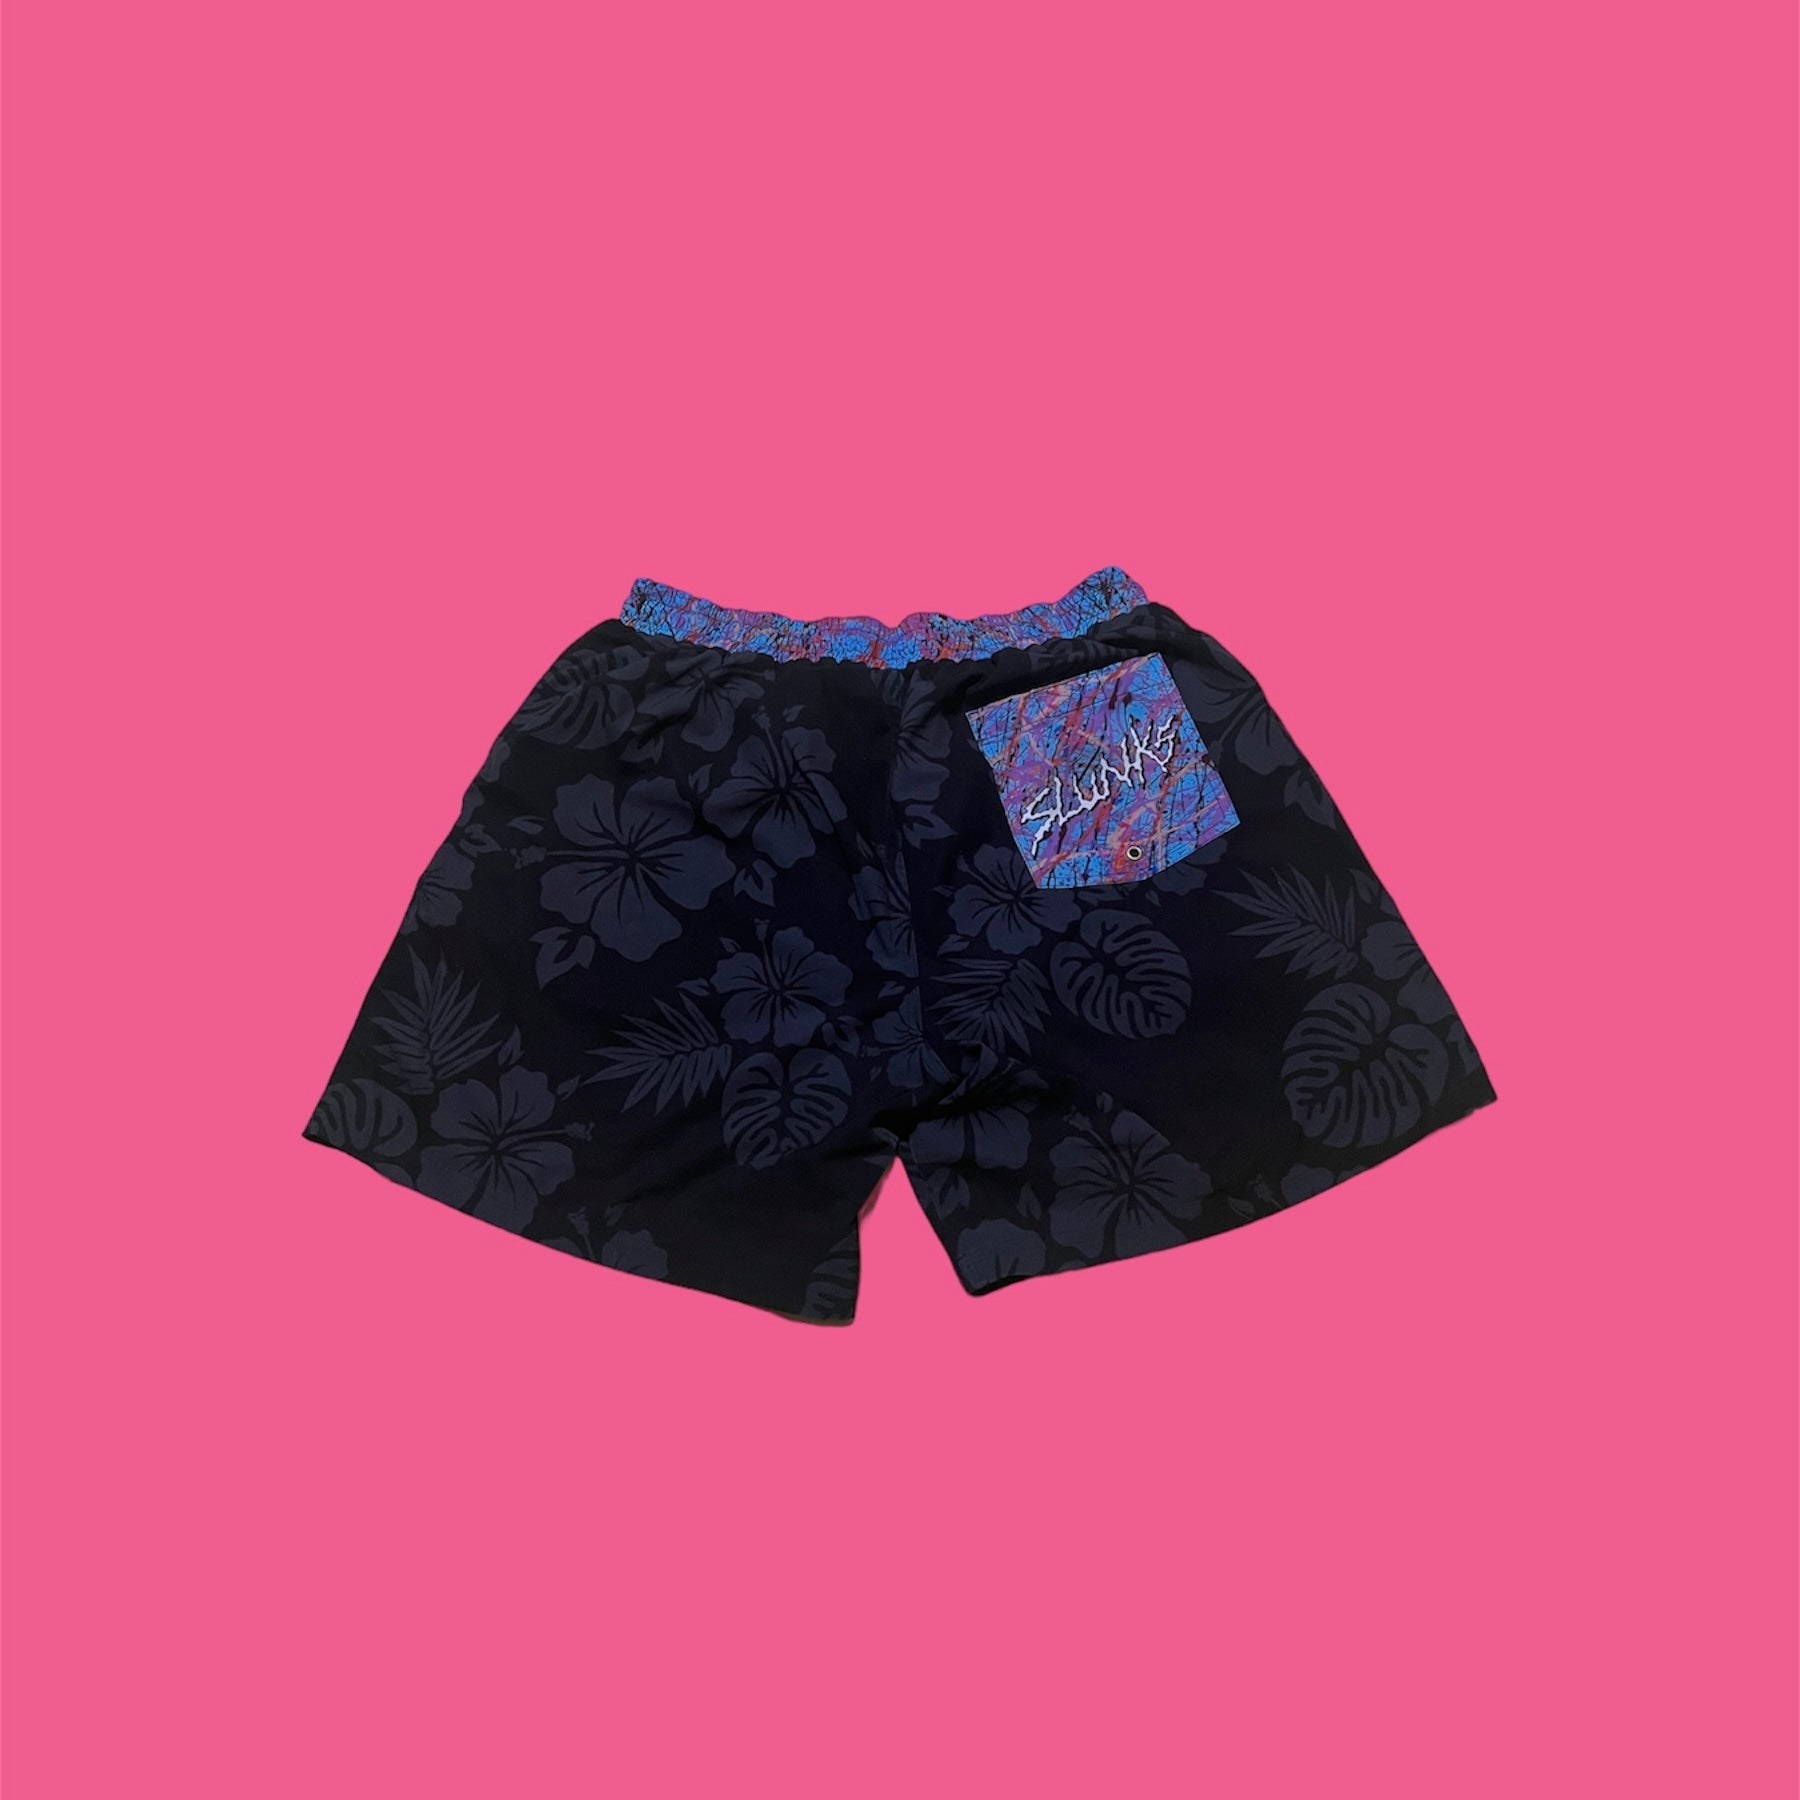 Small-print brushed lounge shorts, Miiyu x Twik